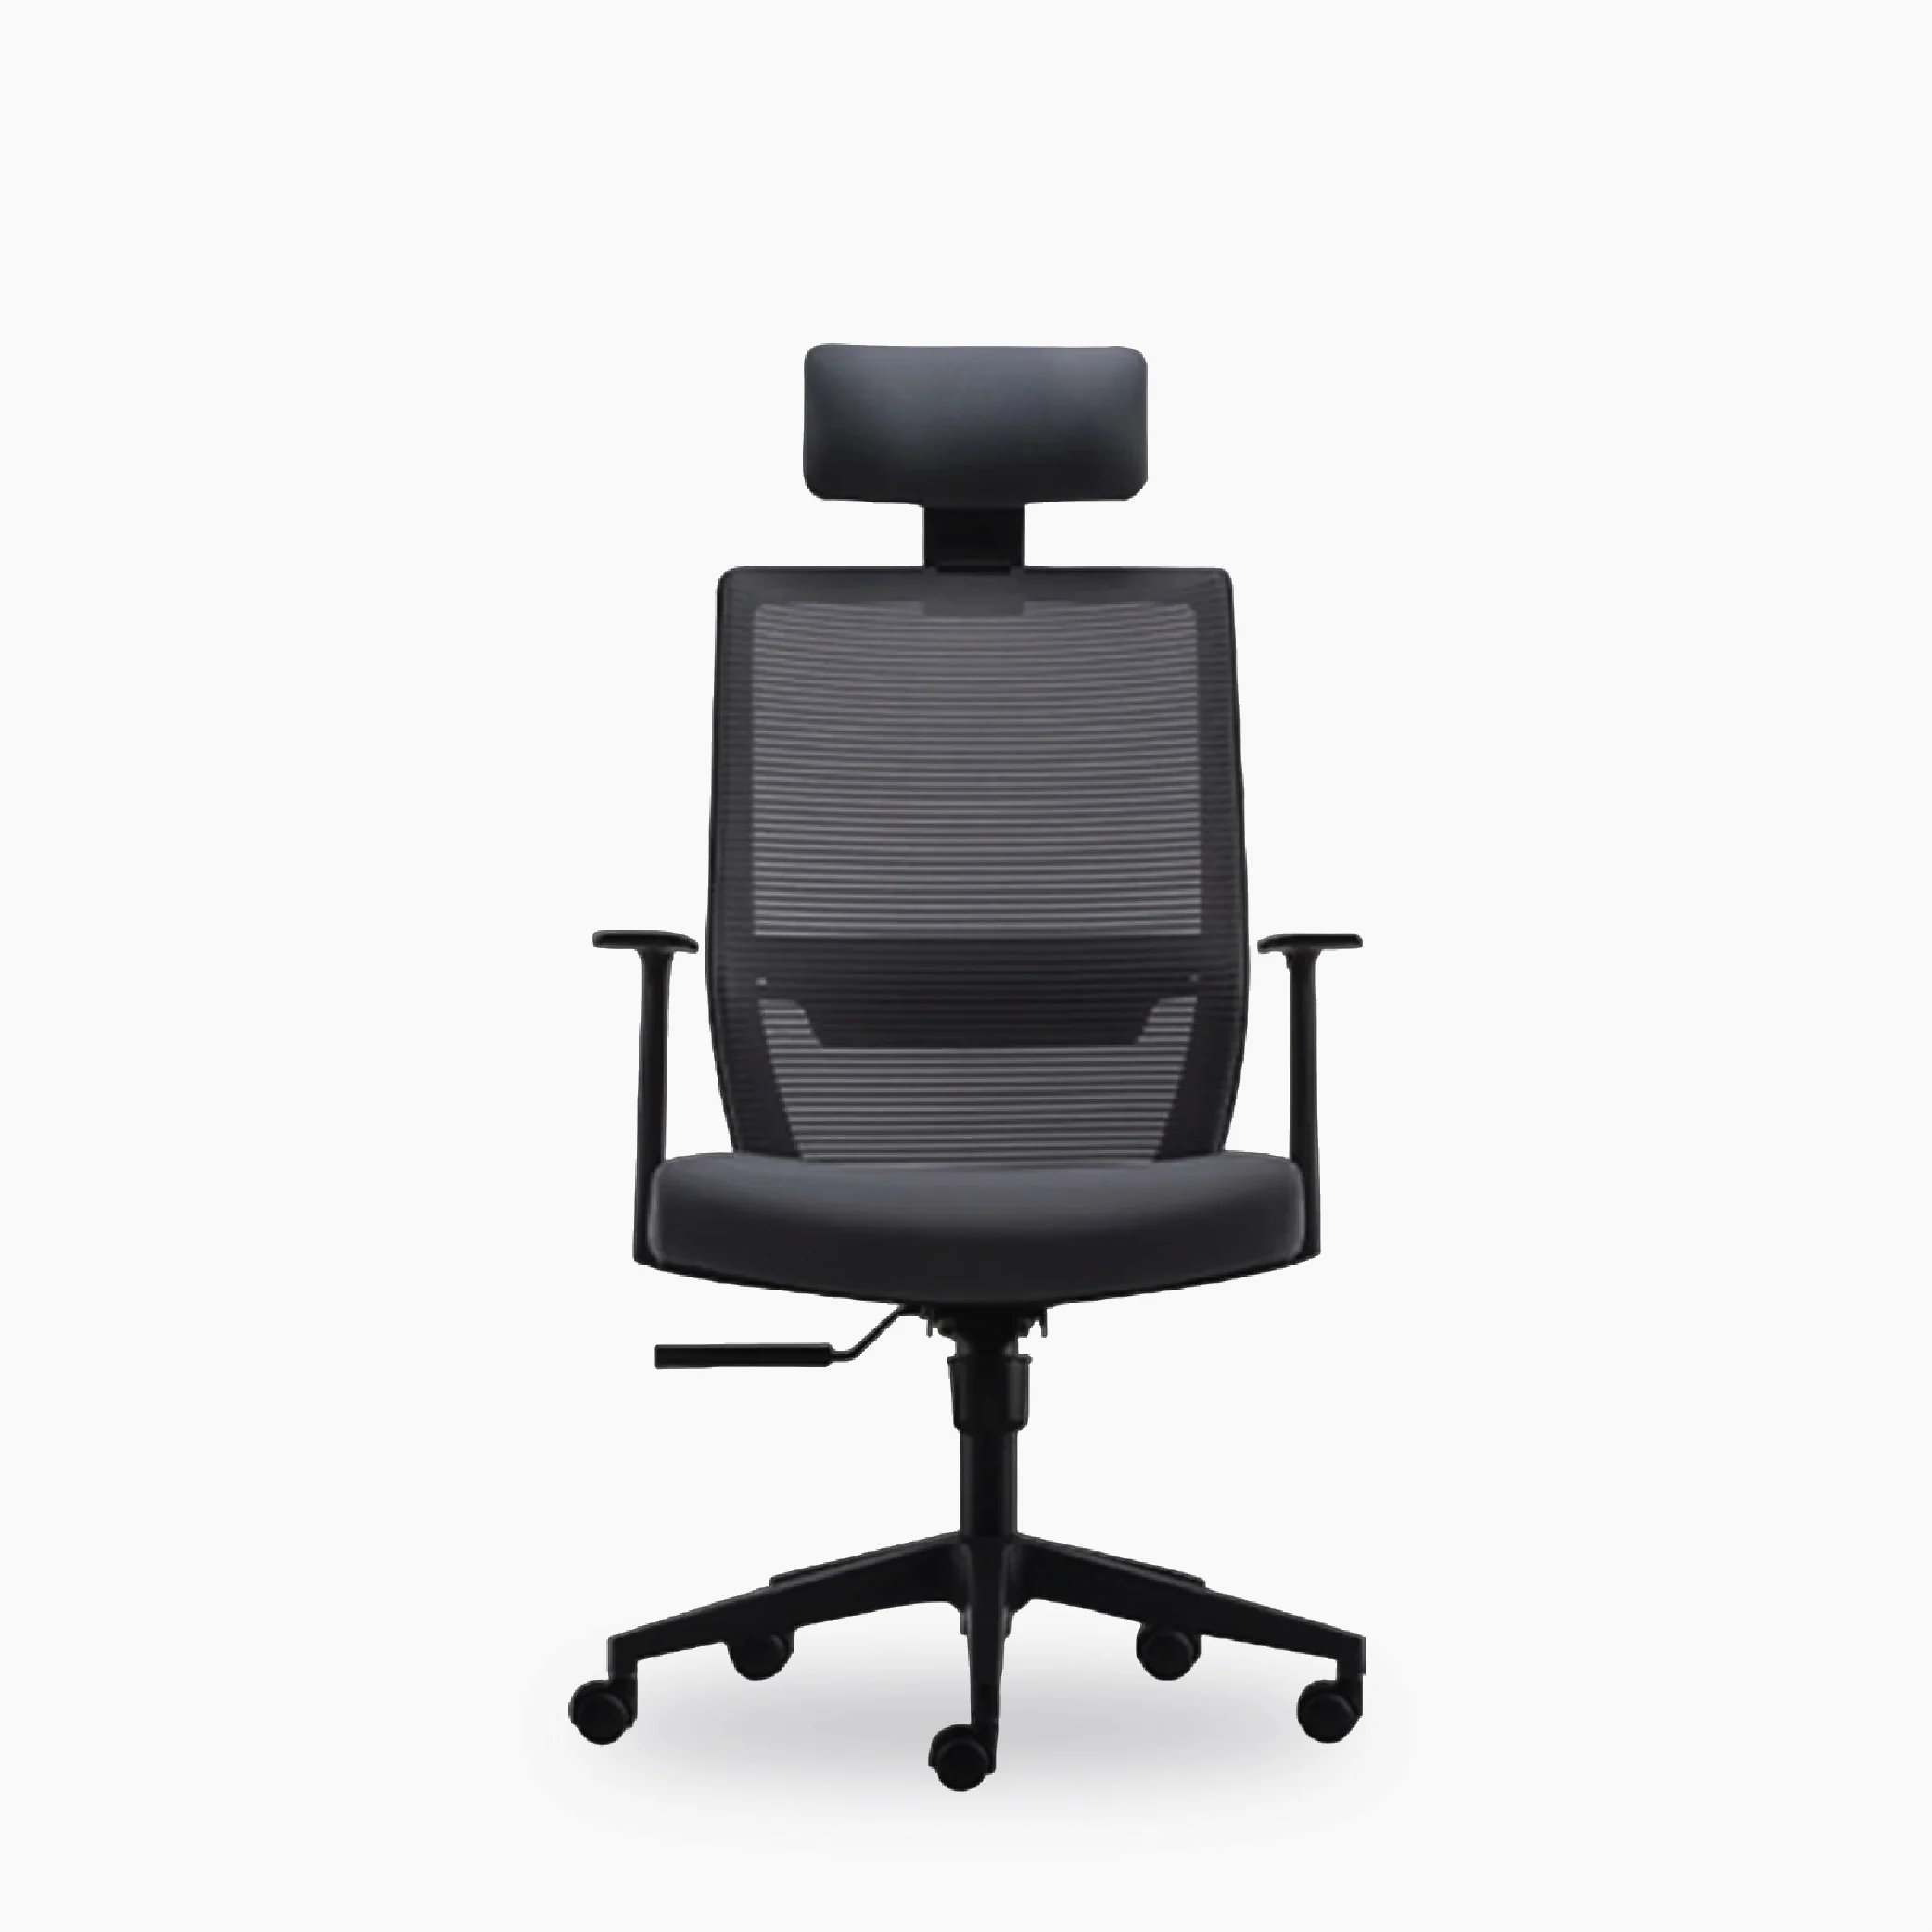 Versalink chair a5